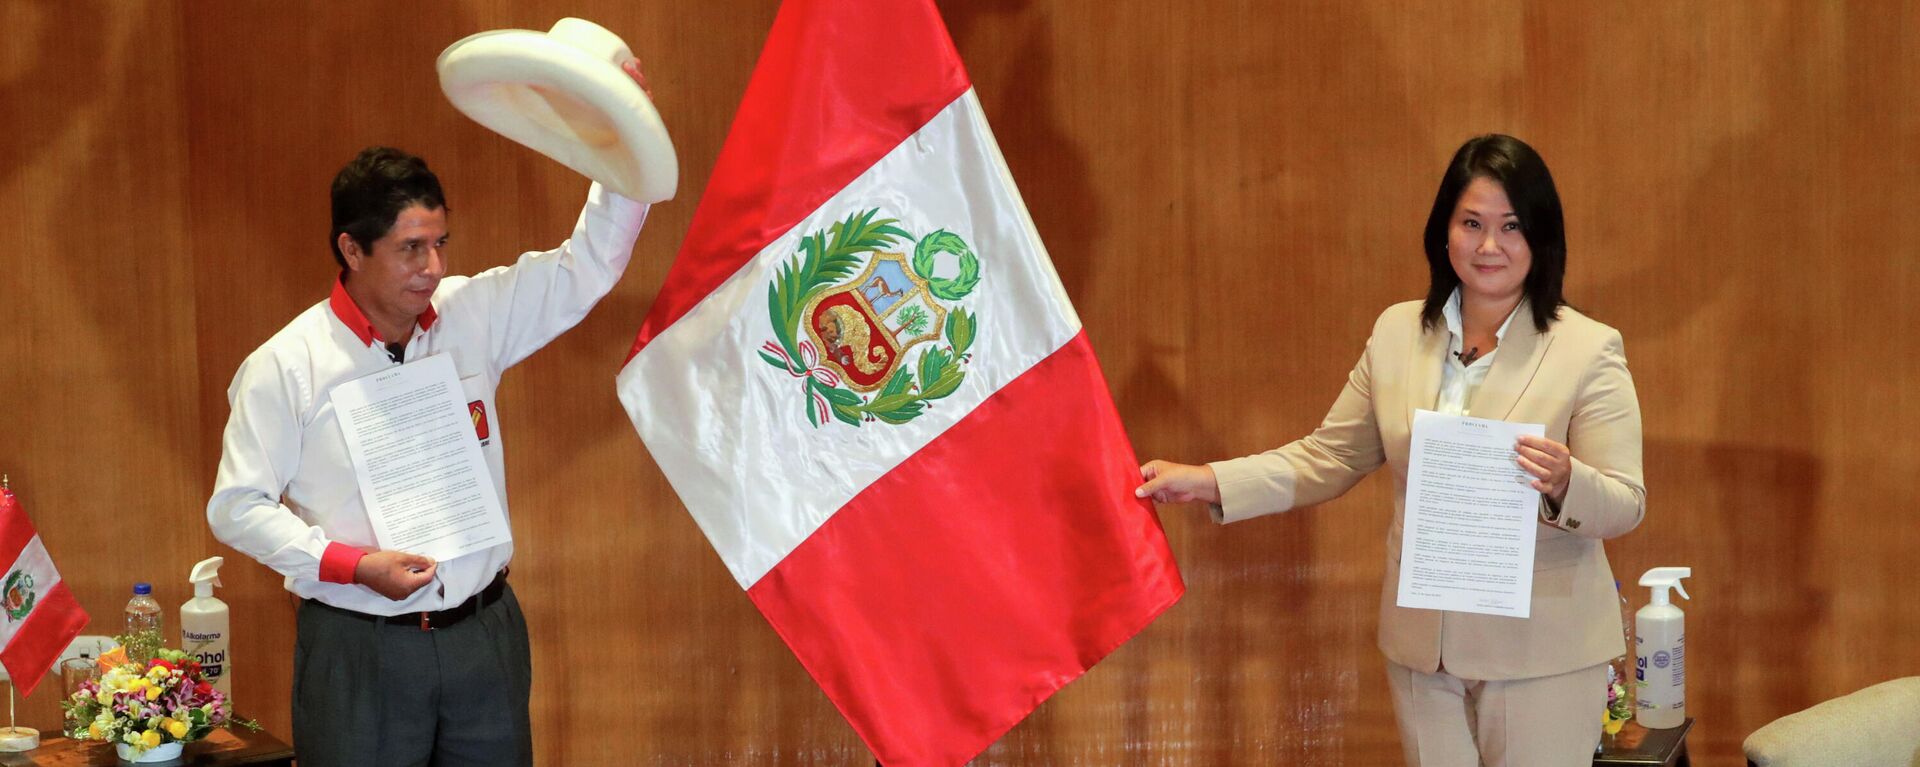 Los candidatos Pedro Castillo (Perú Libre, izquierda) y Keiko Fujimori (Fuerza Popular, derecha) - Sputnik Mundo, 1920, 03.06.2021